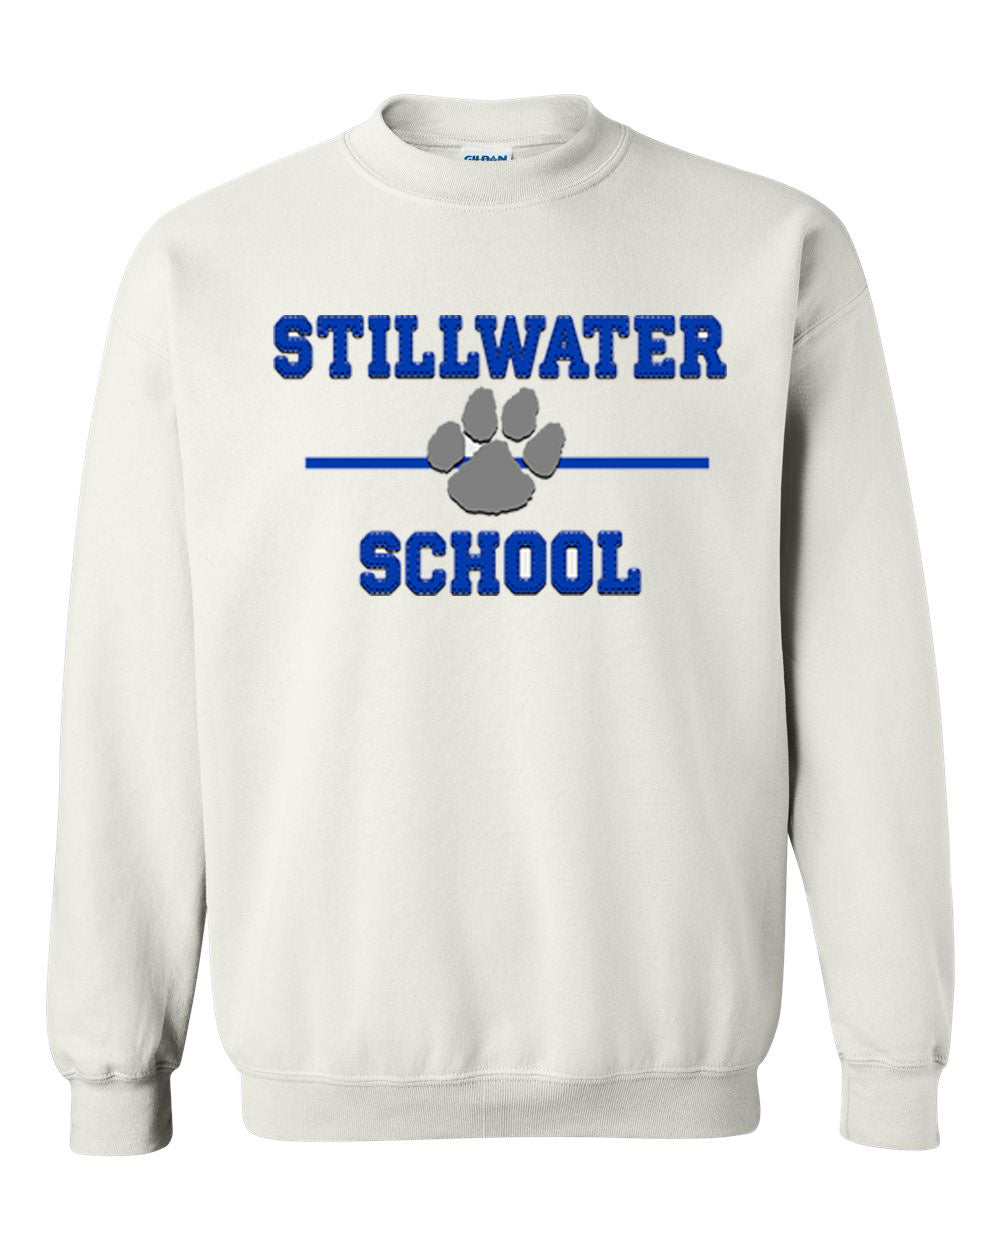 Stillwater Design 11 non hooded sweatshirt